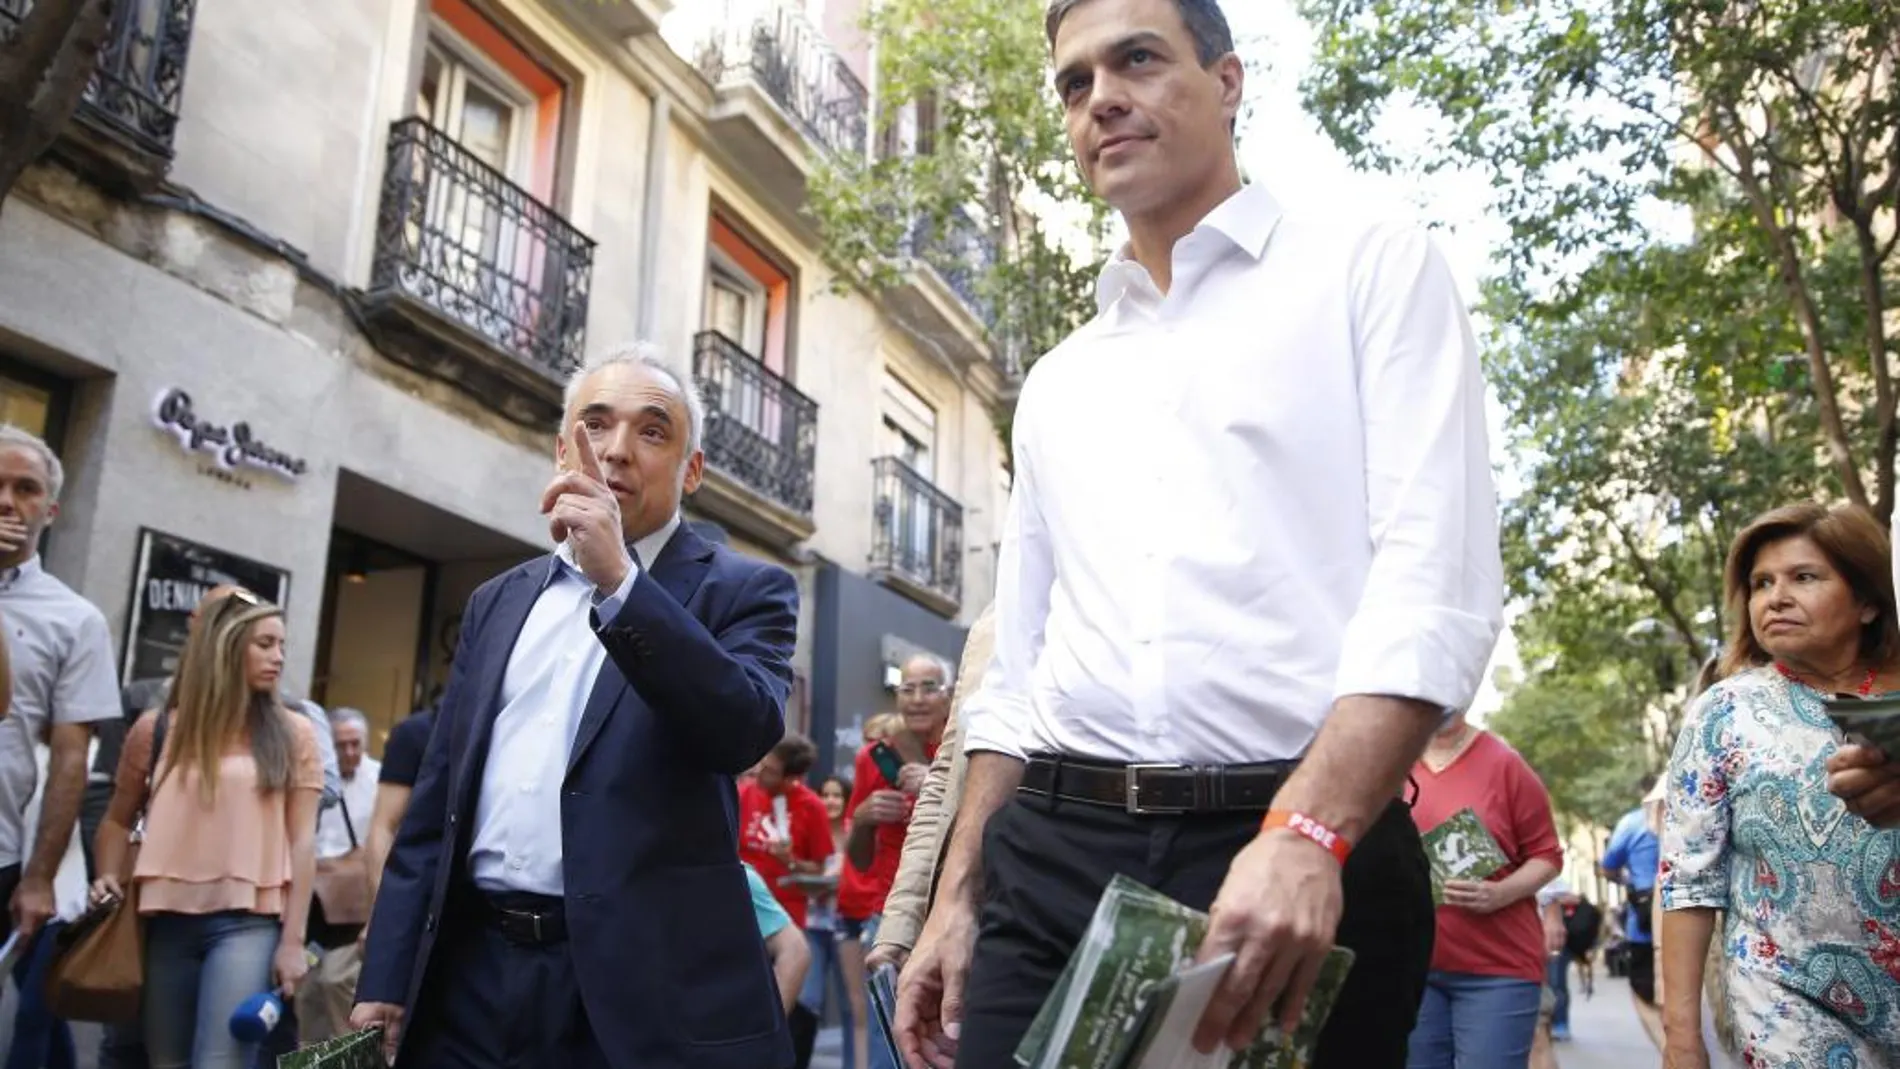 El secretario general del PSOE, Pedro Sánchez, ha repartido propaganda electoral desde el Mercado de Fuencarral hasta la Gran Vía acompañado de algunos dirigentes socialistas como Rafael Simancas.